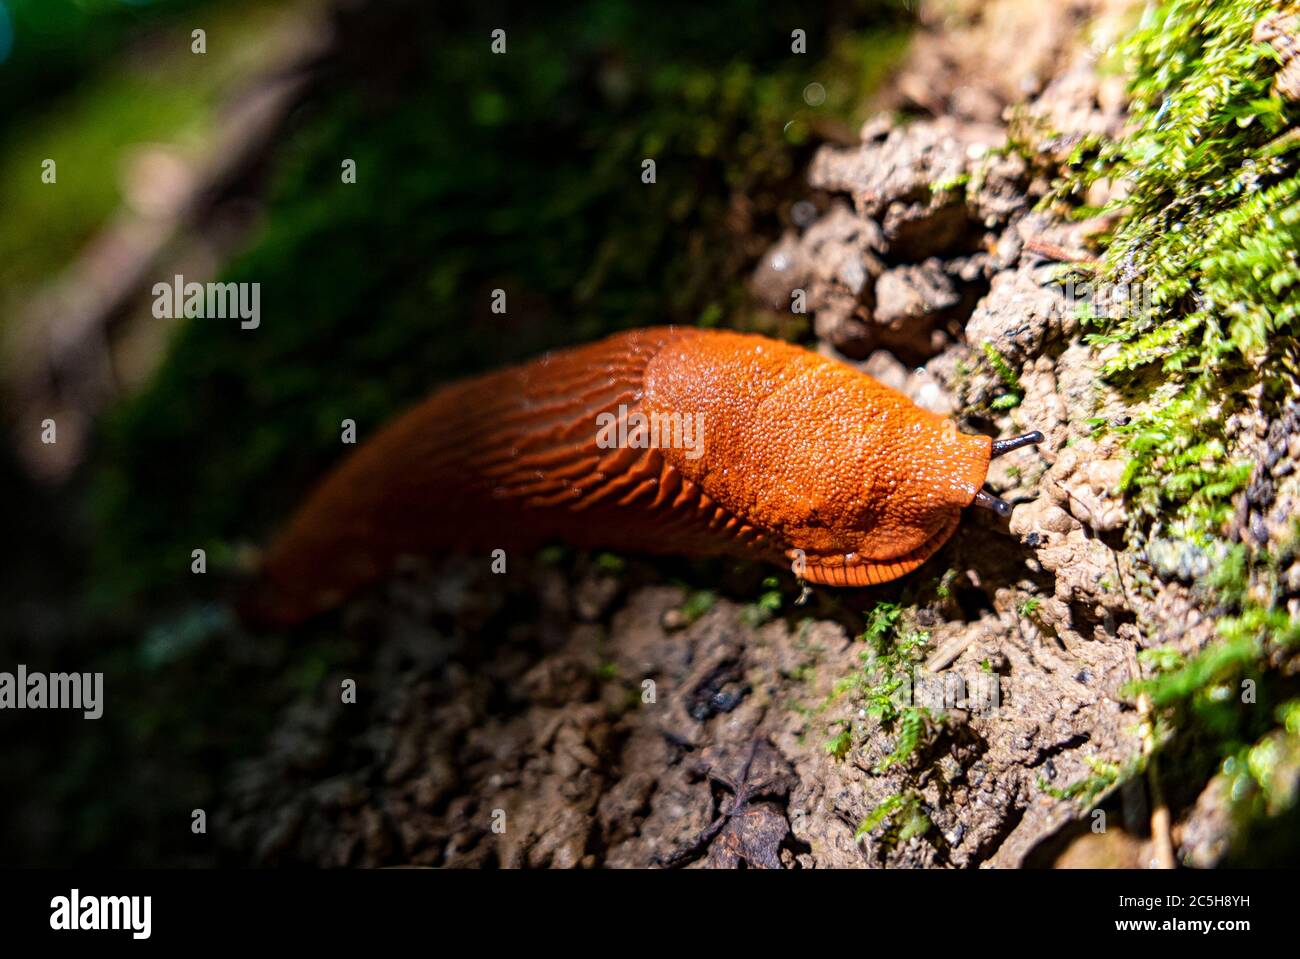 Gros plan d'un escargot rouge sur le sol d'une forêt Banque D'Images